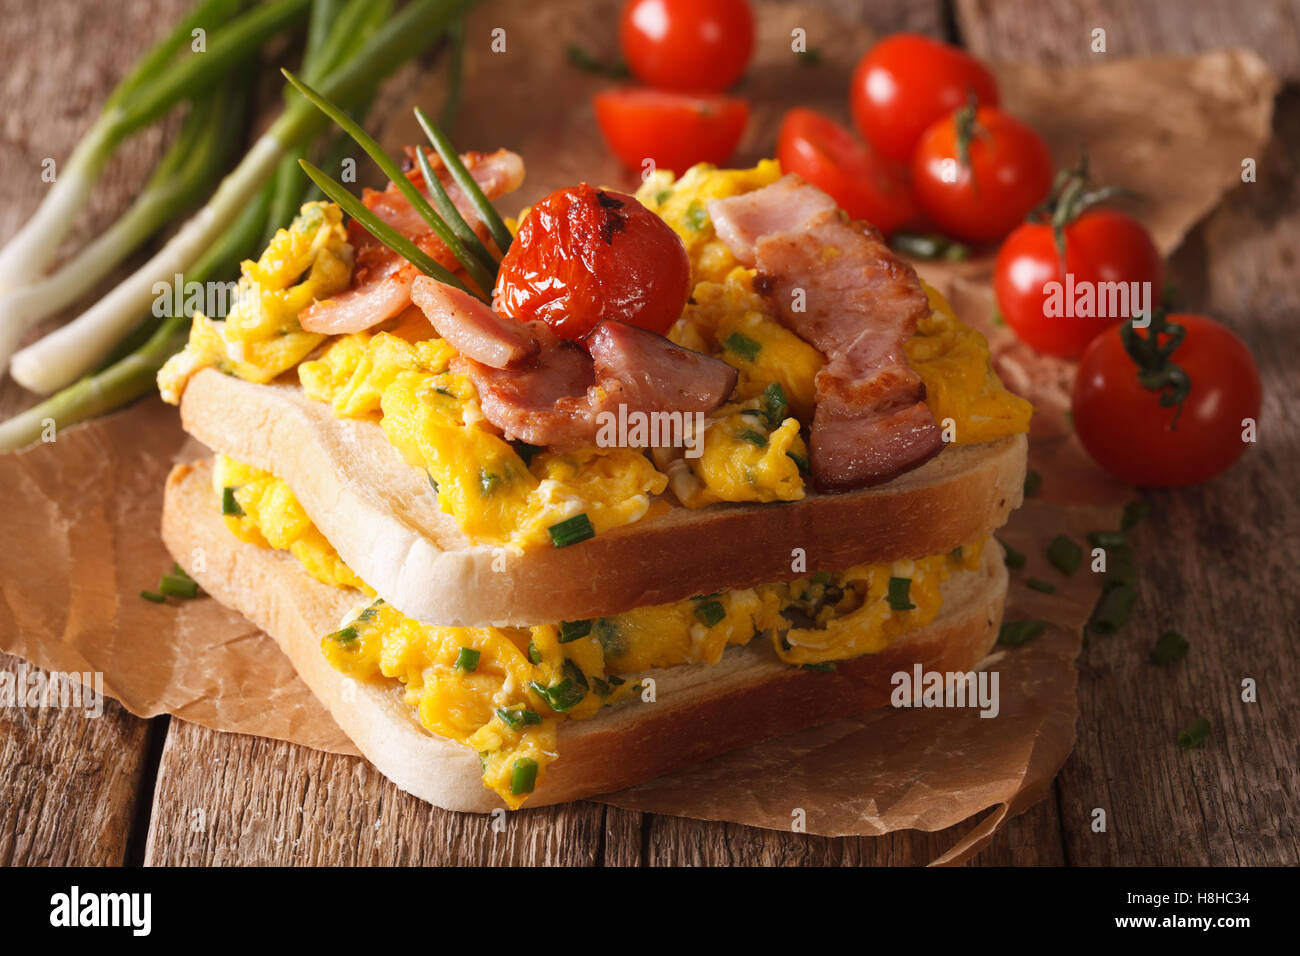 Sandwich double avec des œufs brouillés, bacon et les tomates sur la table. L'horizontale Banque D'Images